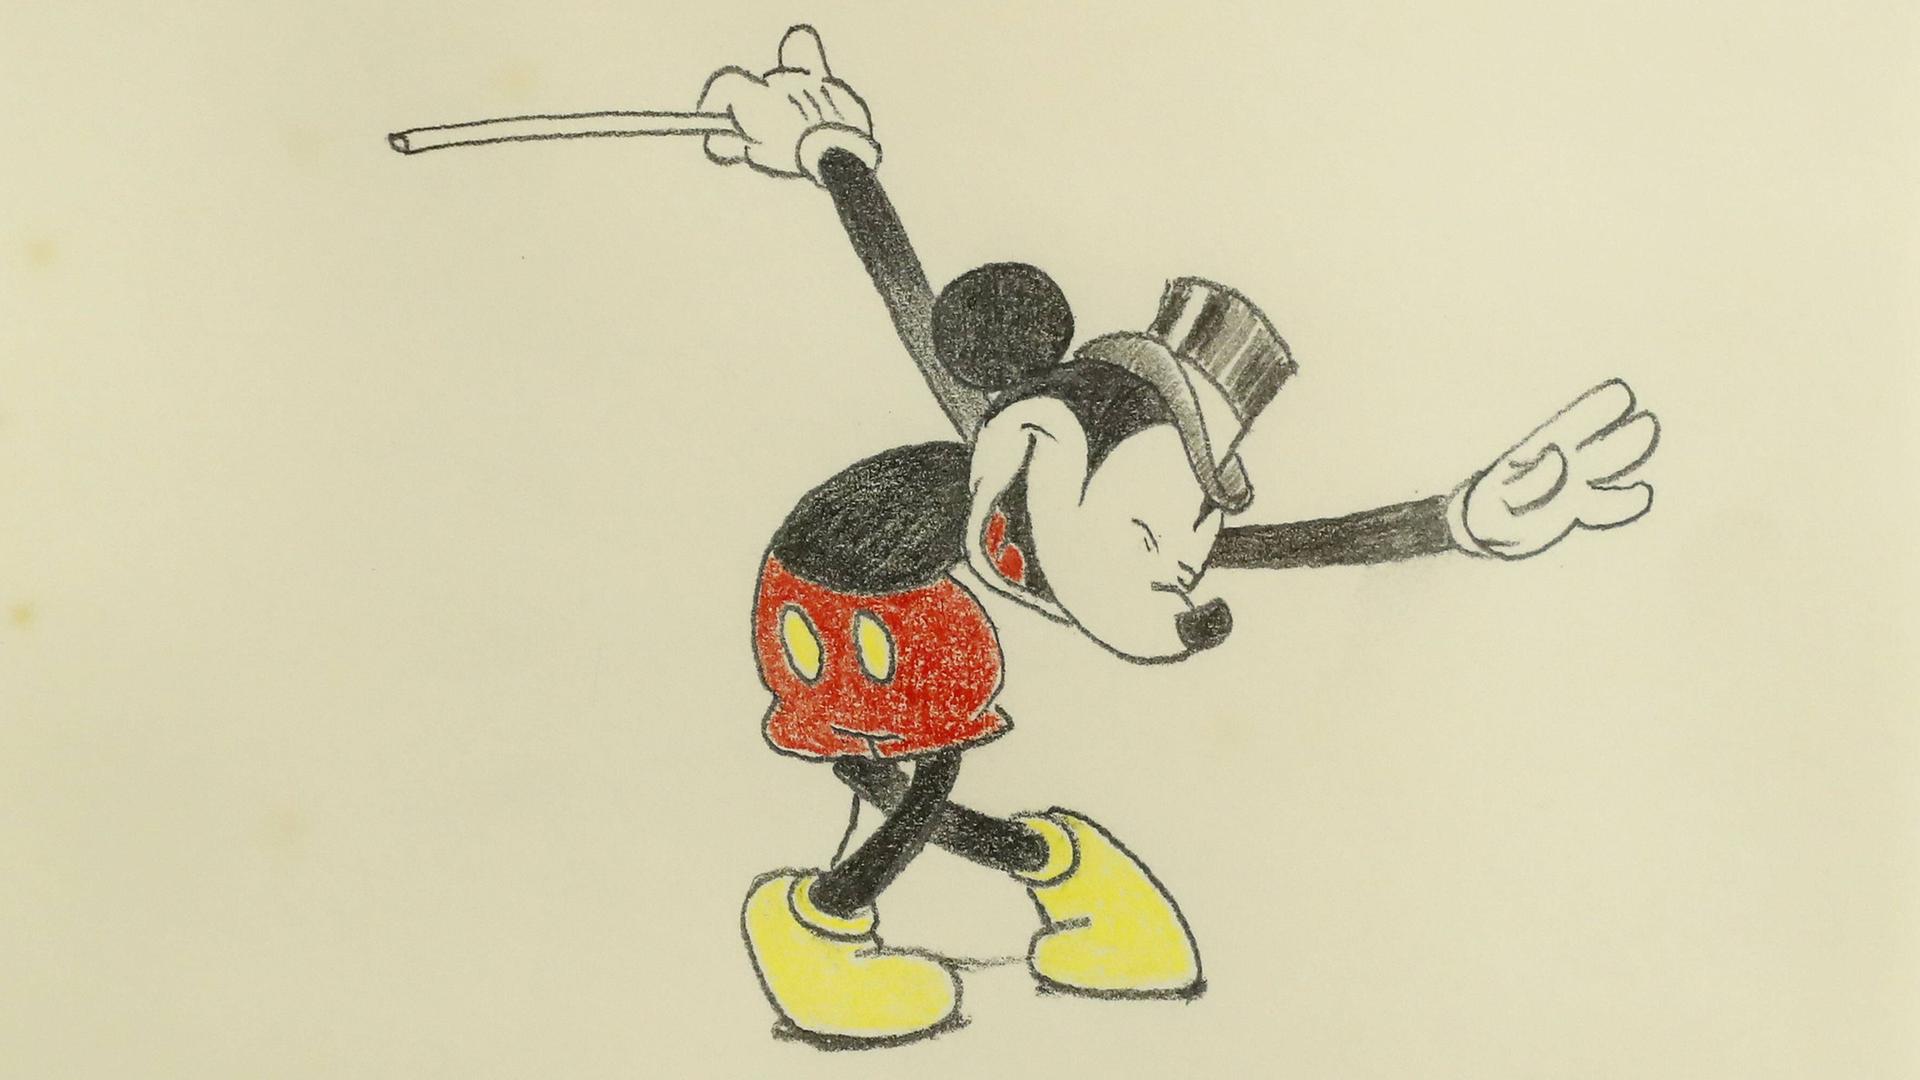 Mickey Mouse verbeugt sich samt Hut und Stock mit überkreuzten Beinen, 1988 von Carl Barks gemalt.